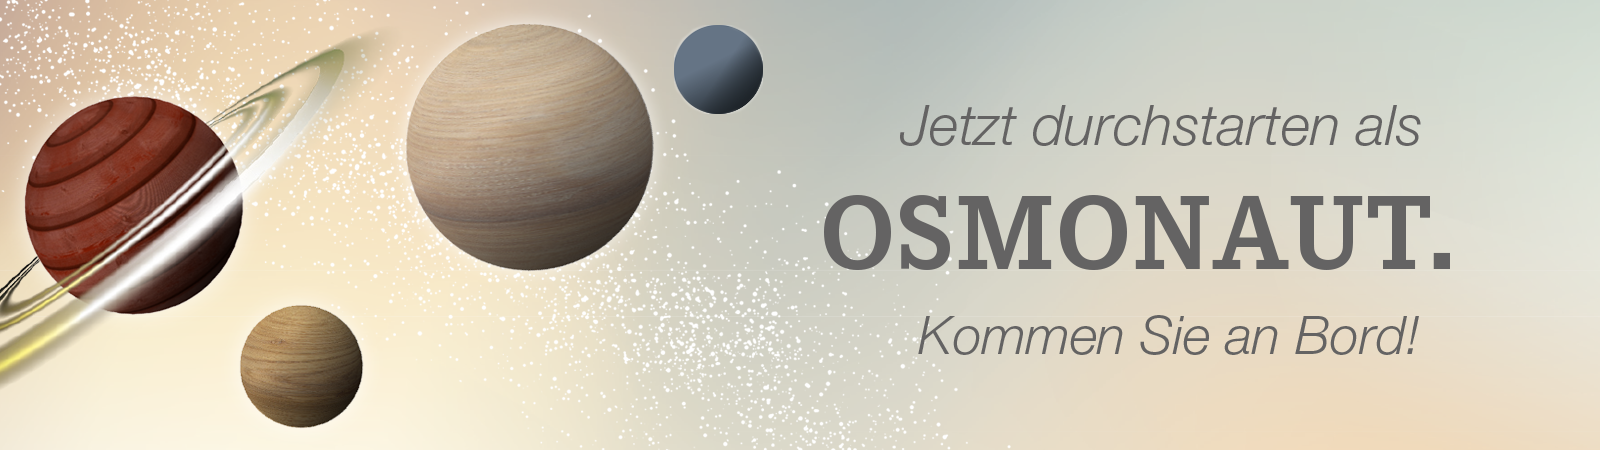 Stellenangebote bei Osmo Holz und Color – Ihre Karriere mit Zukunftsperspektiven. Gleich bewerben und Osmonaut werden!